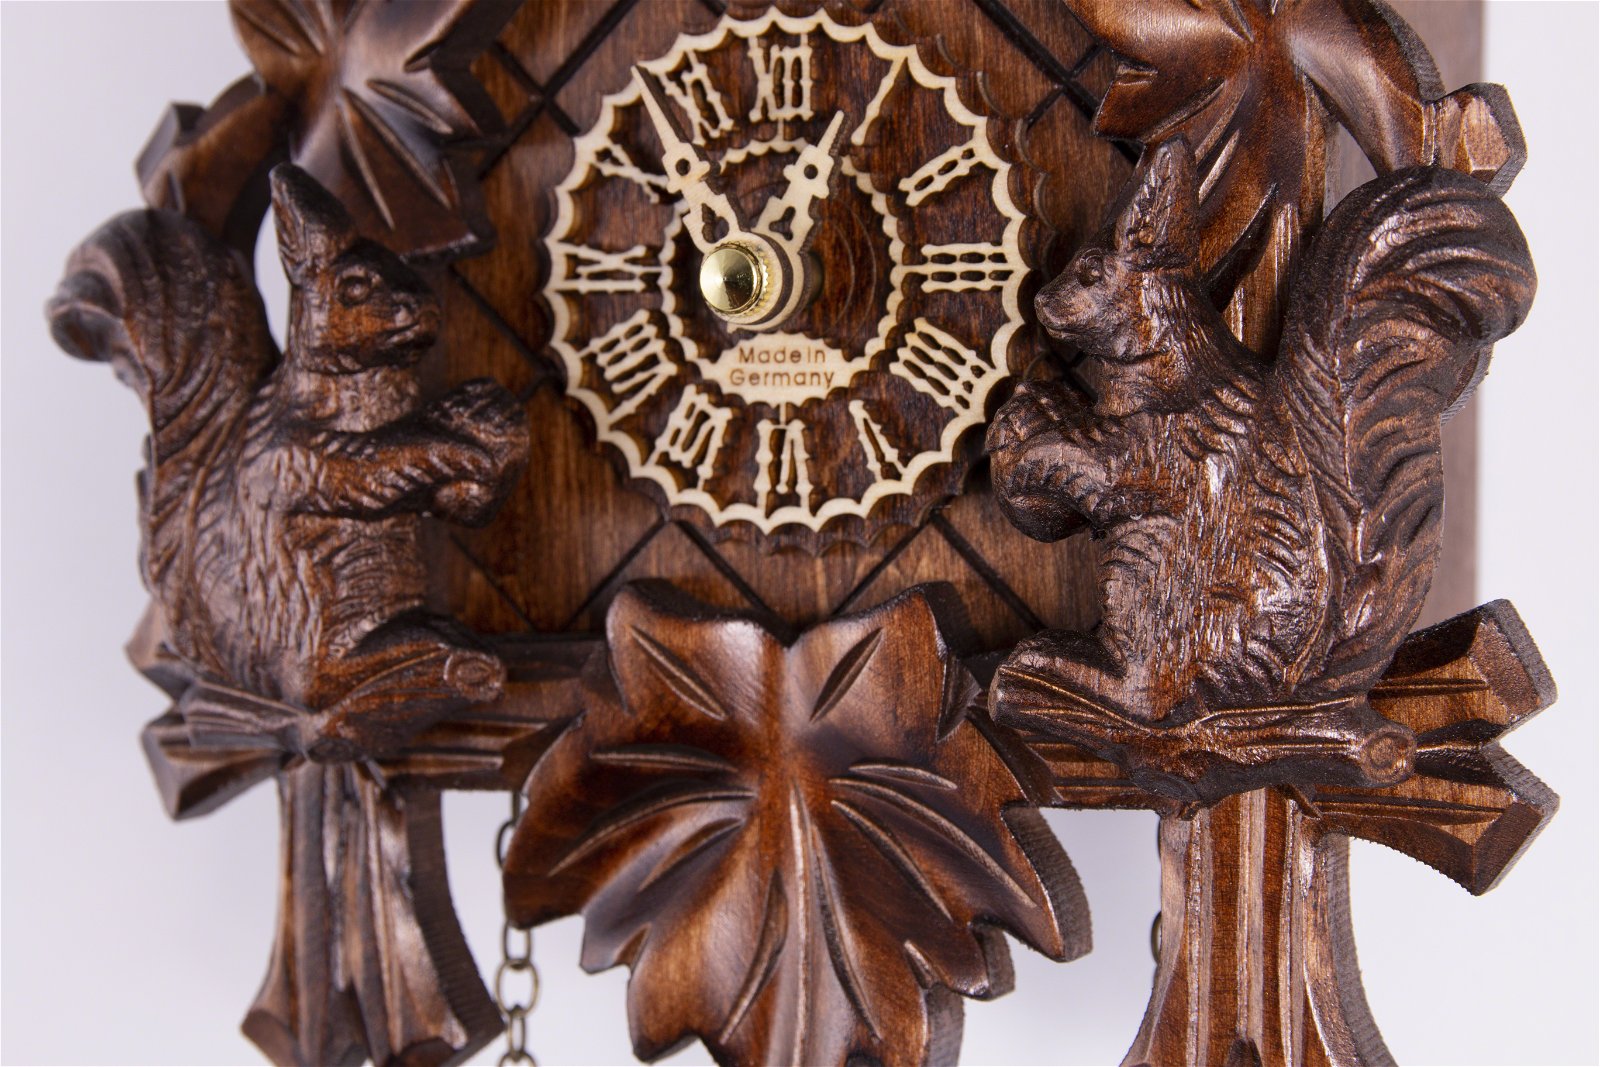 Kuckucksuhr Quarz-Uhrwerk geschnitzt 24cm von Trenkle Uhren